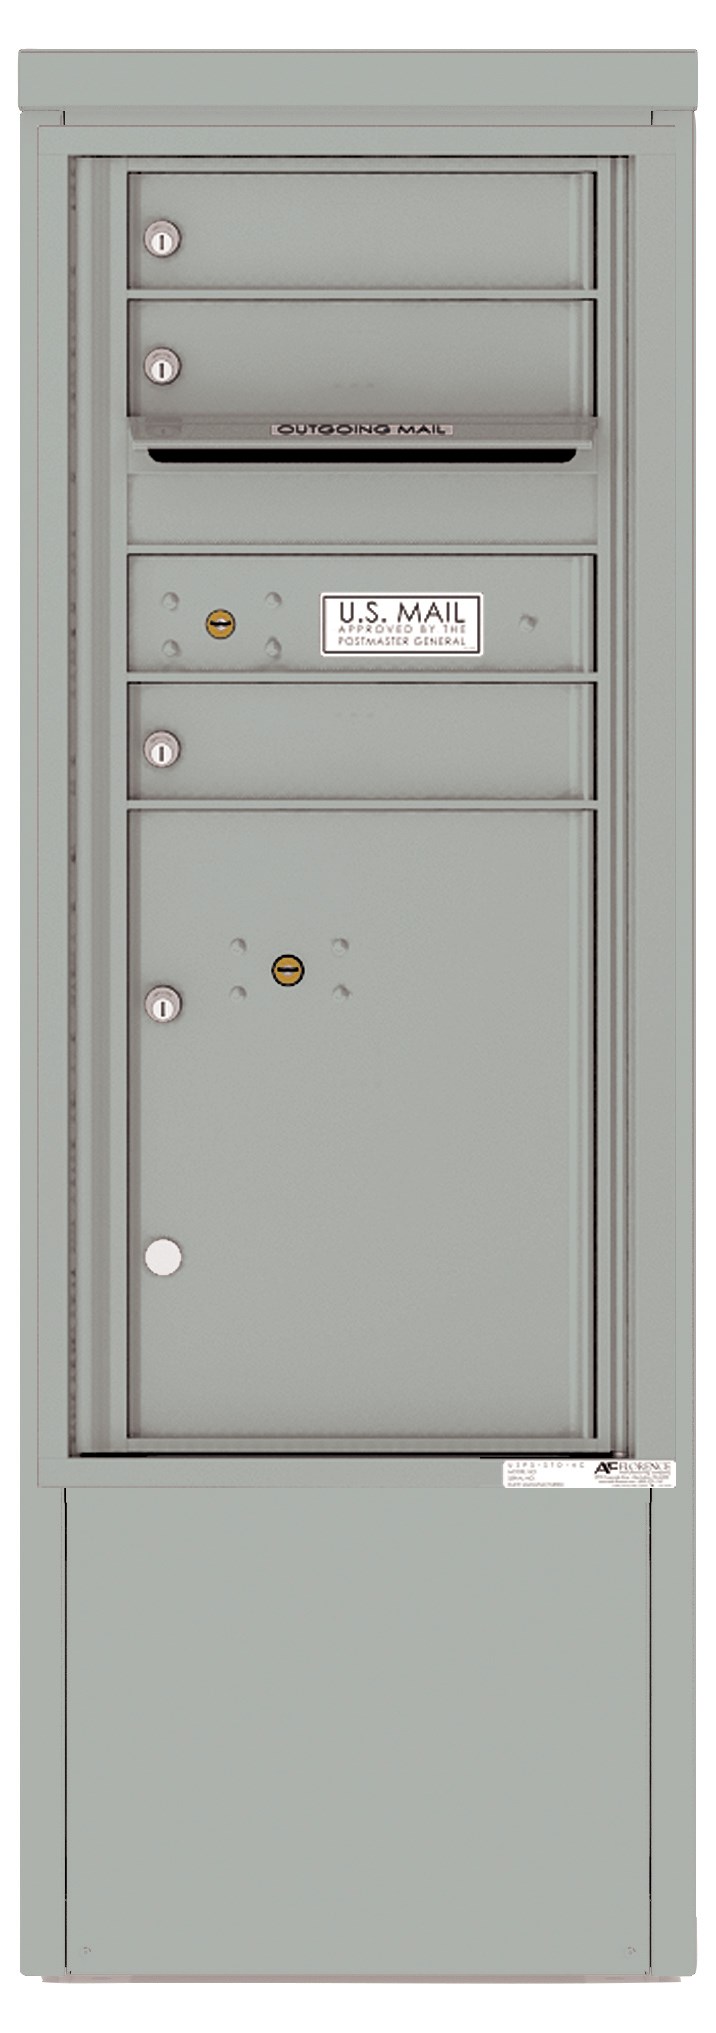 4CADS-03-D 4C Horizontal Depot Mailbox Silver Speck